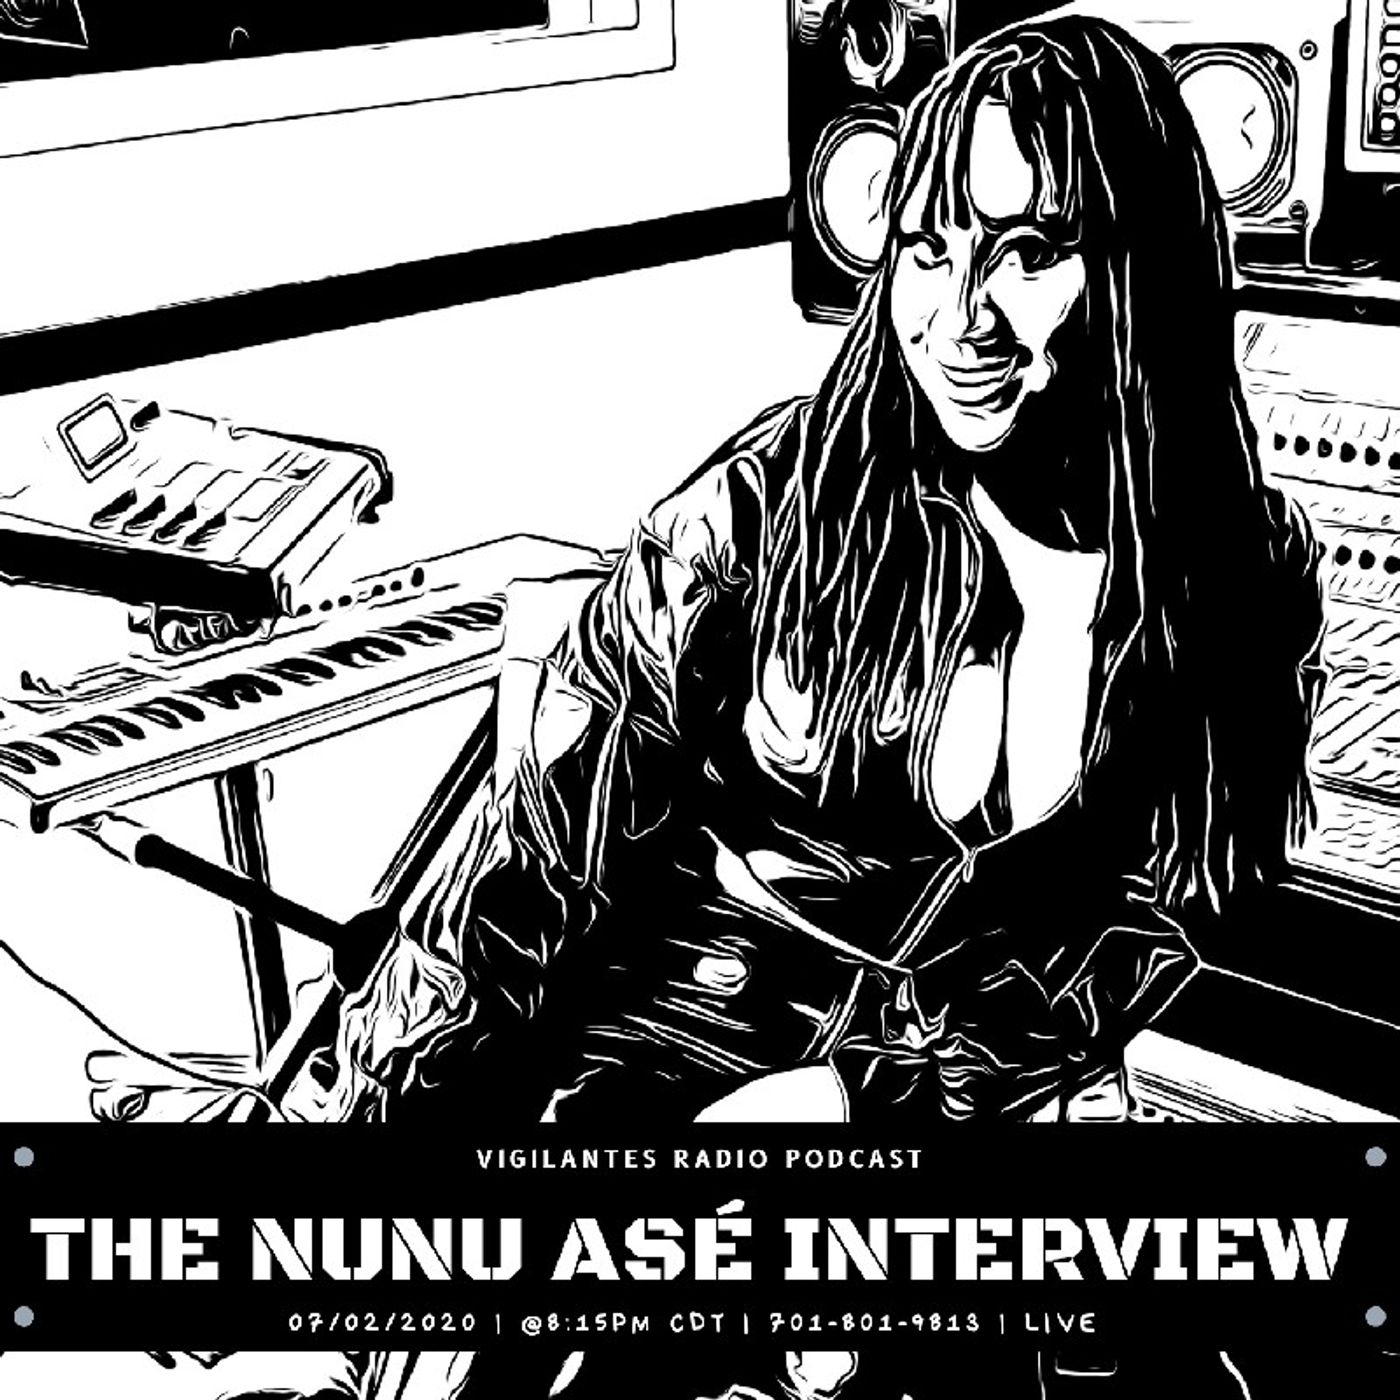 The NuNu Asé Interview. Image